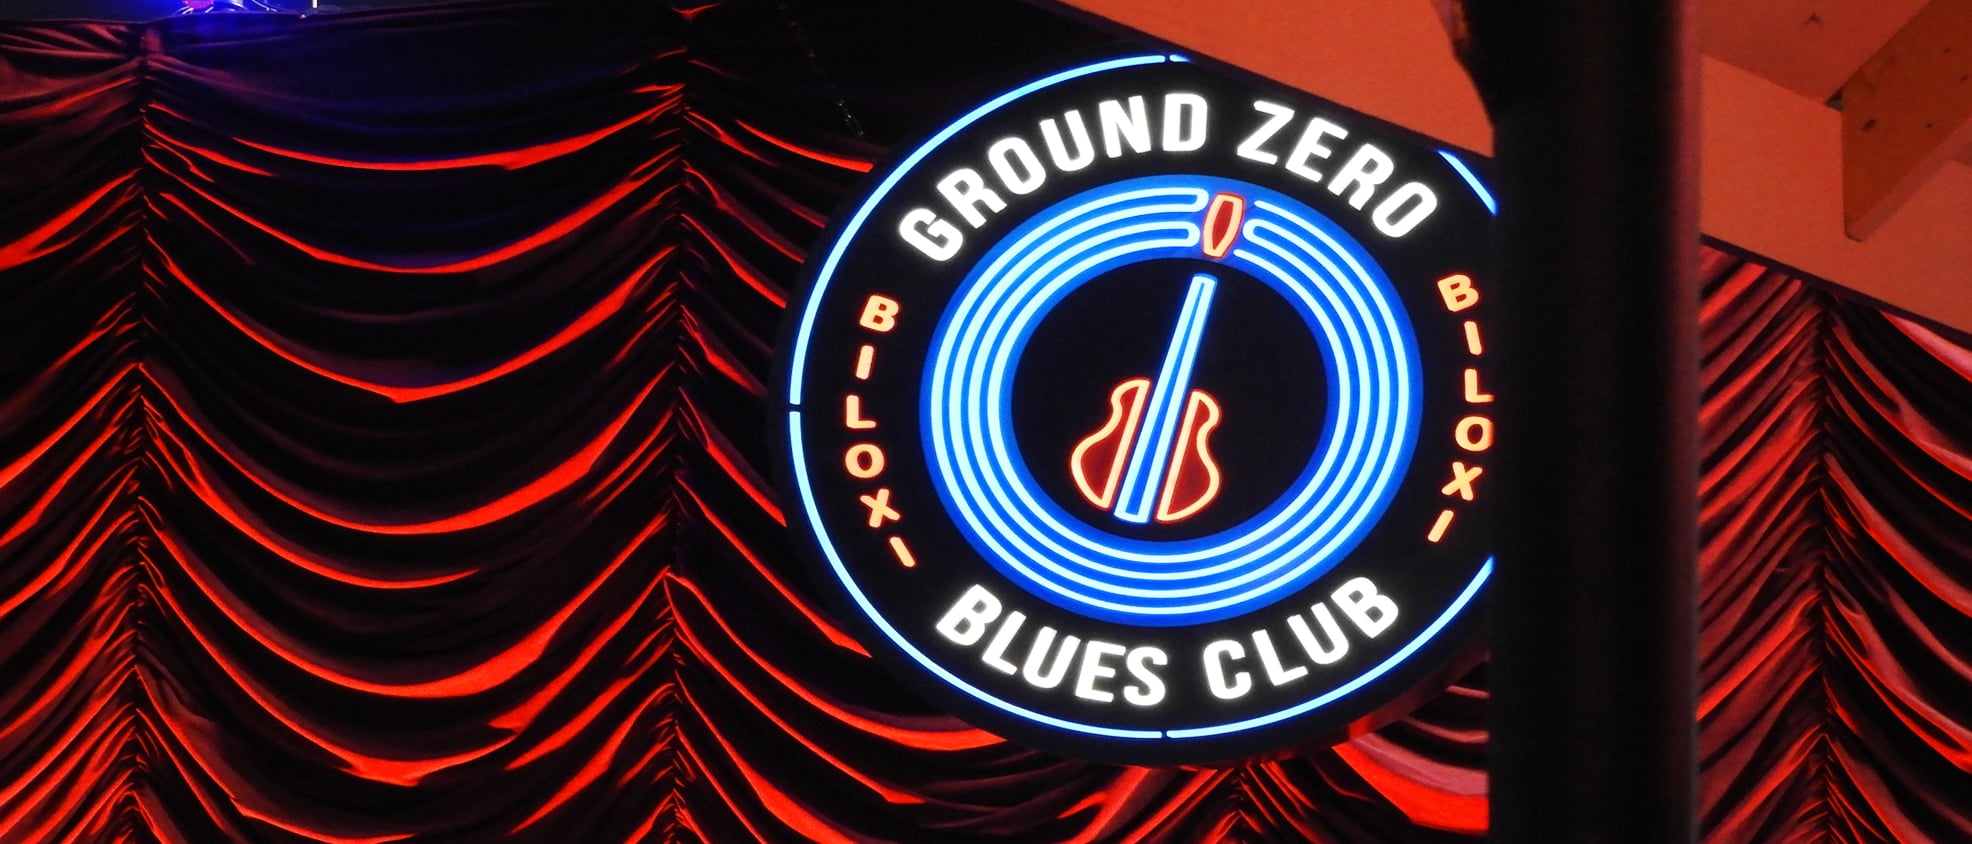 The Blues are Rockin’ the Ground Zero Blues Club Biloxi Our